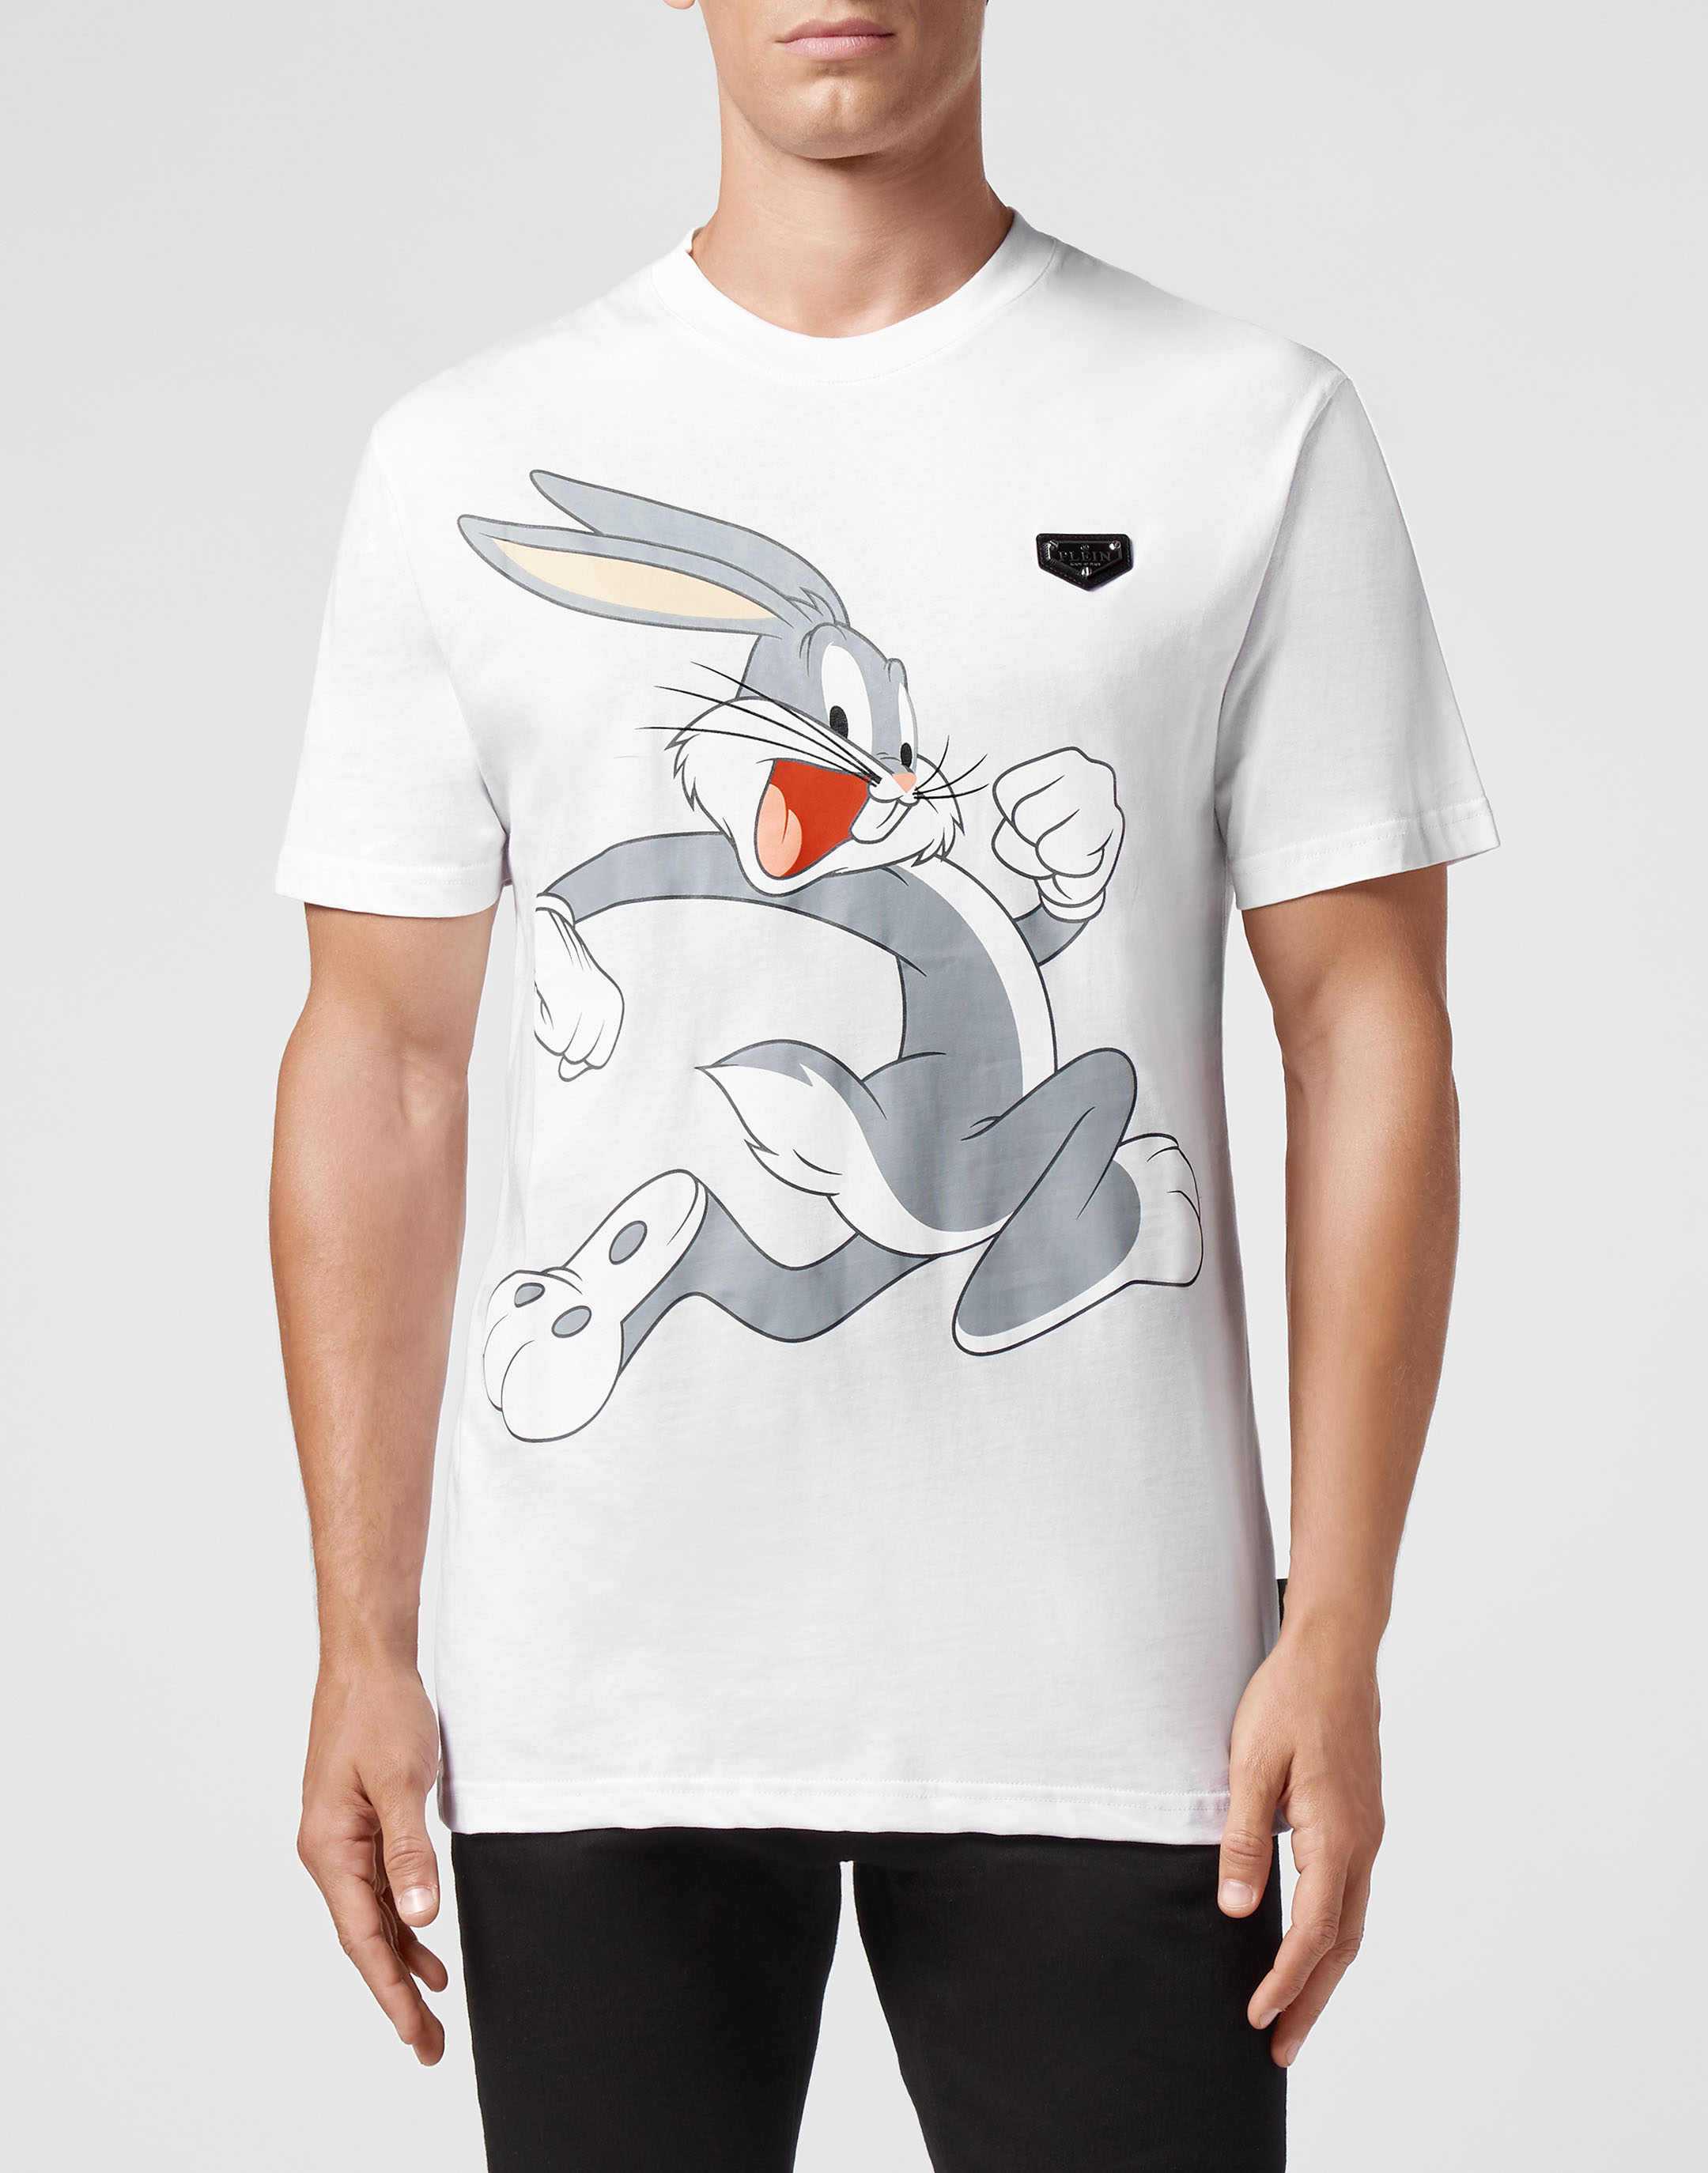 安い通販サイト ENNOY 3PACK T-SHIRTS (WHT/BLK/GRY) XXL Tシャツ ...